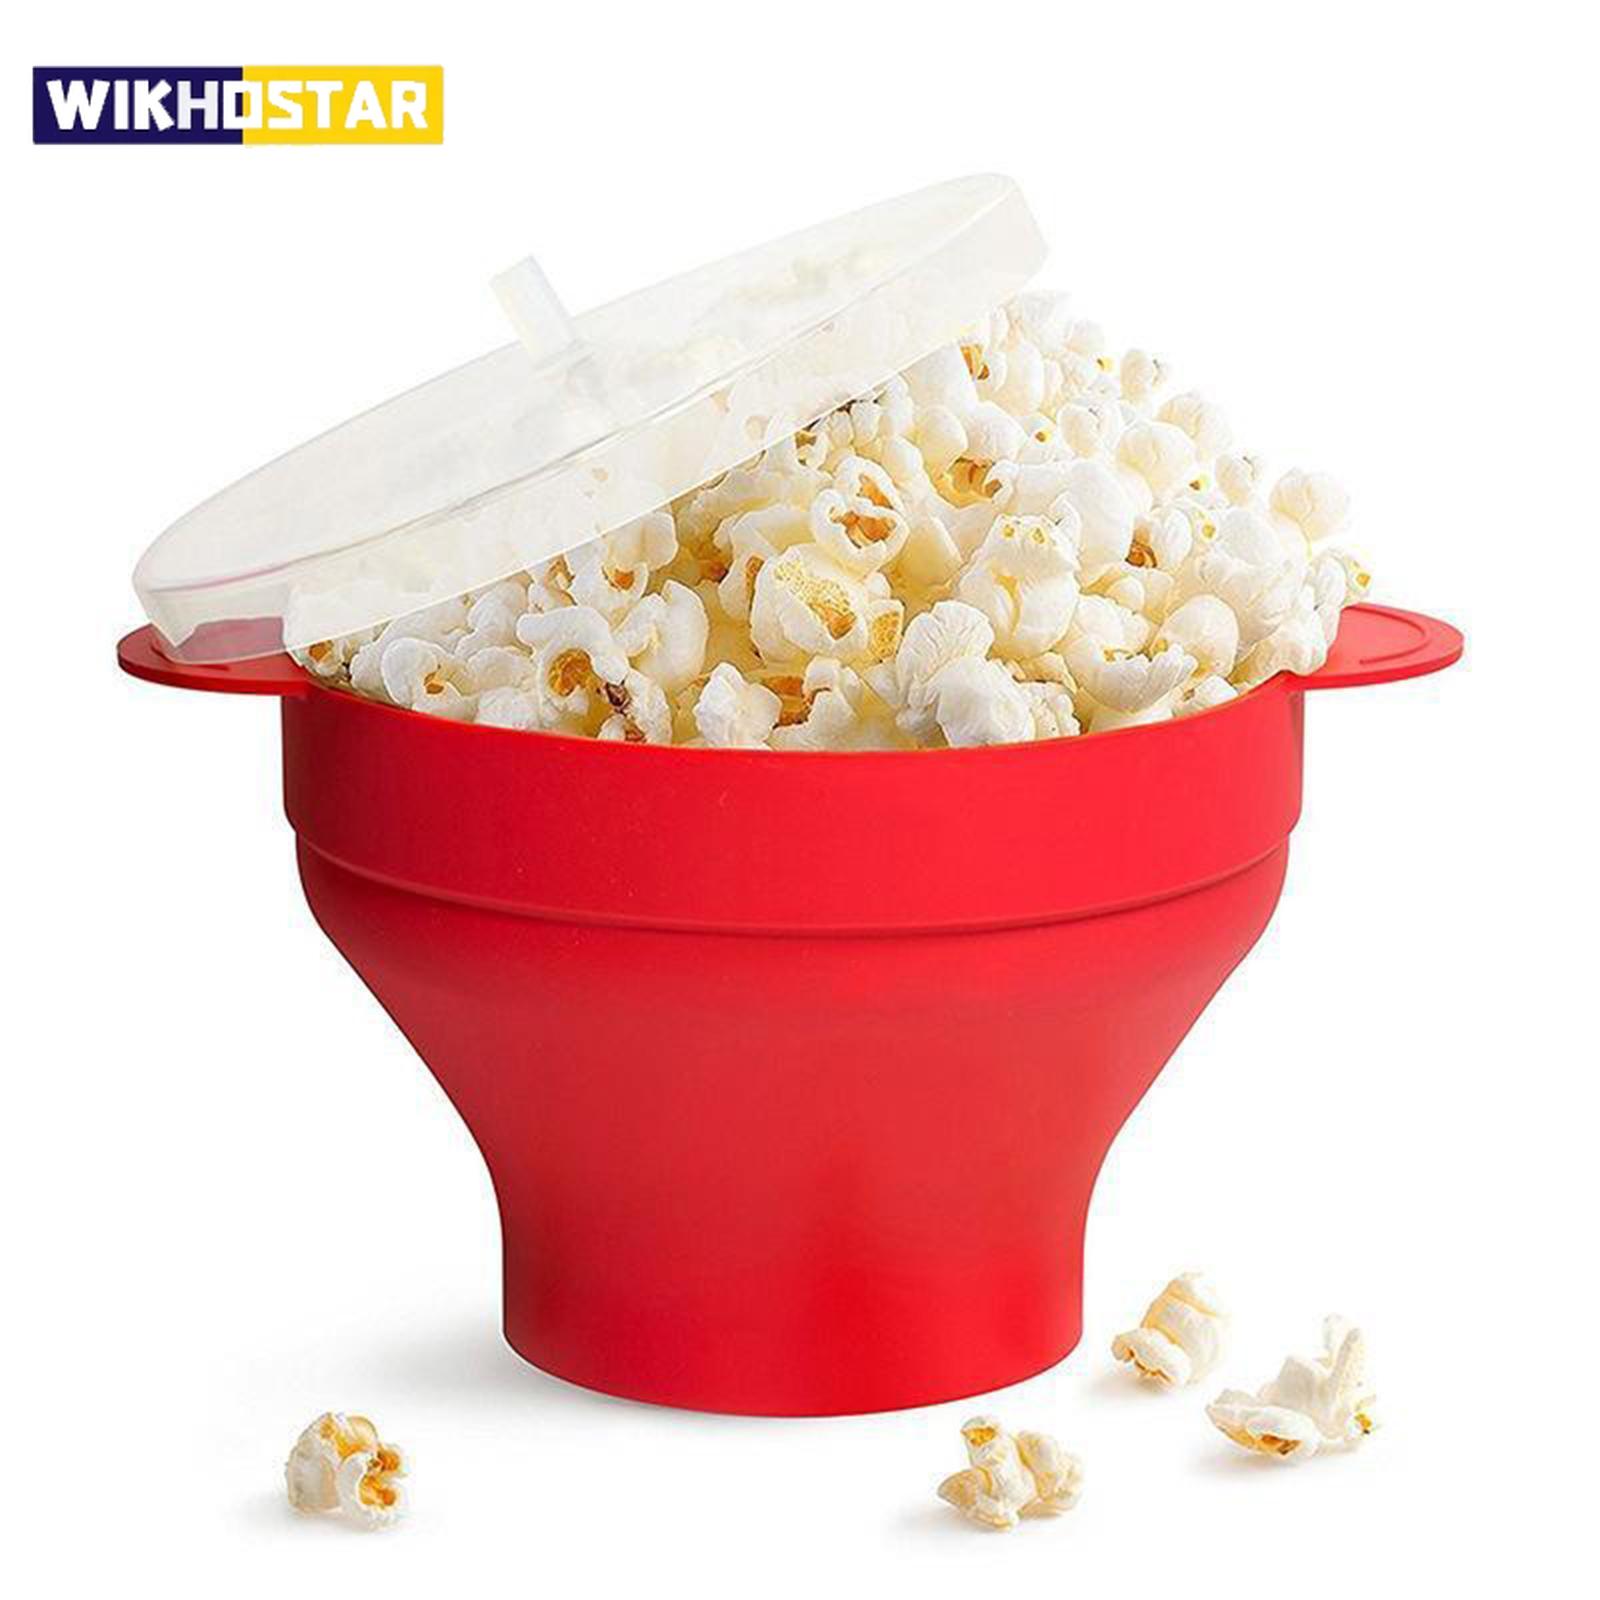 WIKHOSTAR Keuken Magnetron Popcorn Kom Emmer Siliconen DIY Rode Popcorn Maker met Deksel Chips Fruitschaal Hoge kwaliteit Eenvoudig gereedschap